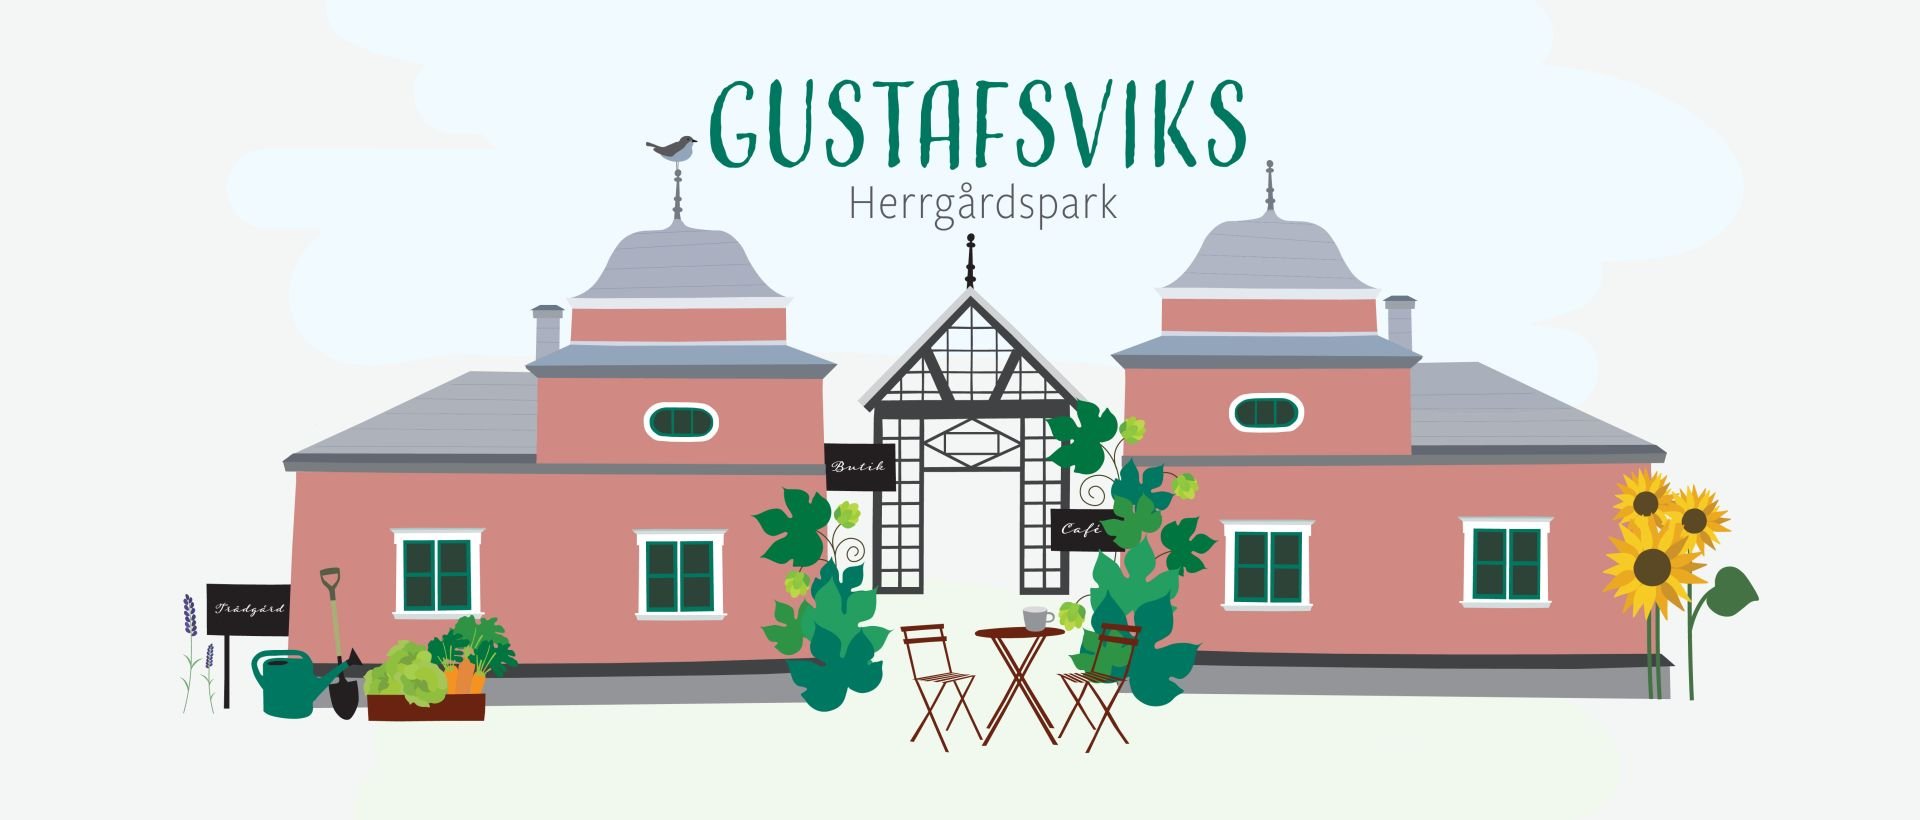 Välkommen till den historiska platsen Gustafsviks herrgårdspark i Kristinehamn, här finns köksträdgård med växthus, trädgårdscafé, butik och bigård..